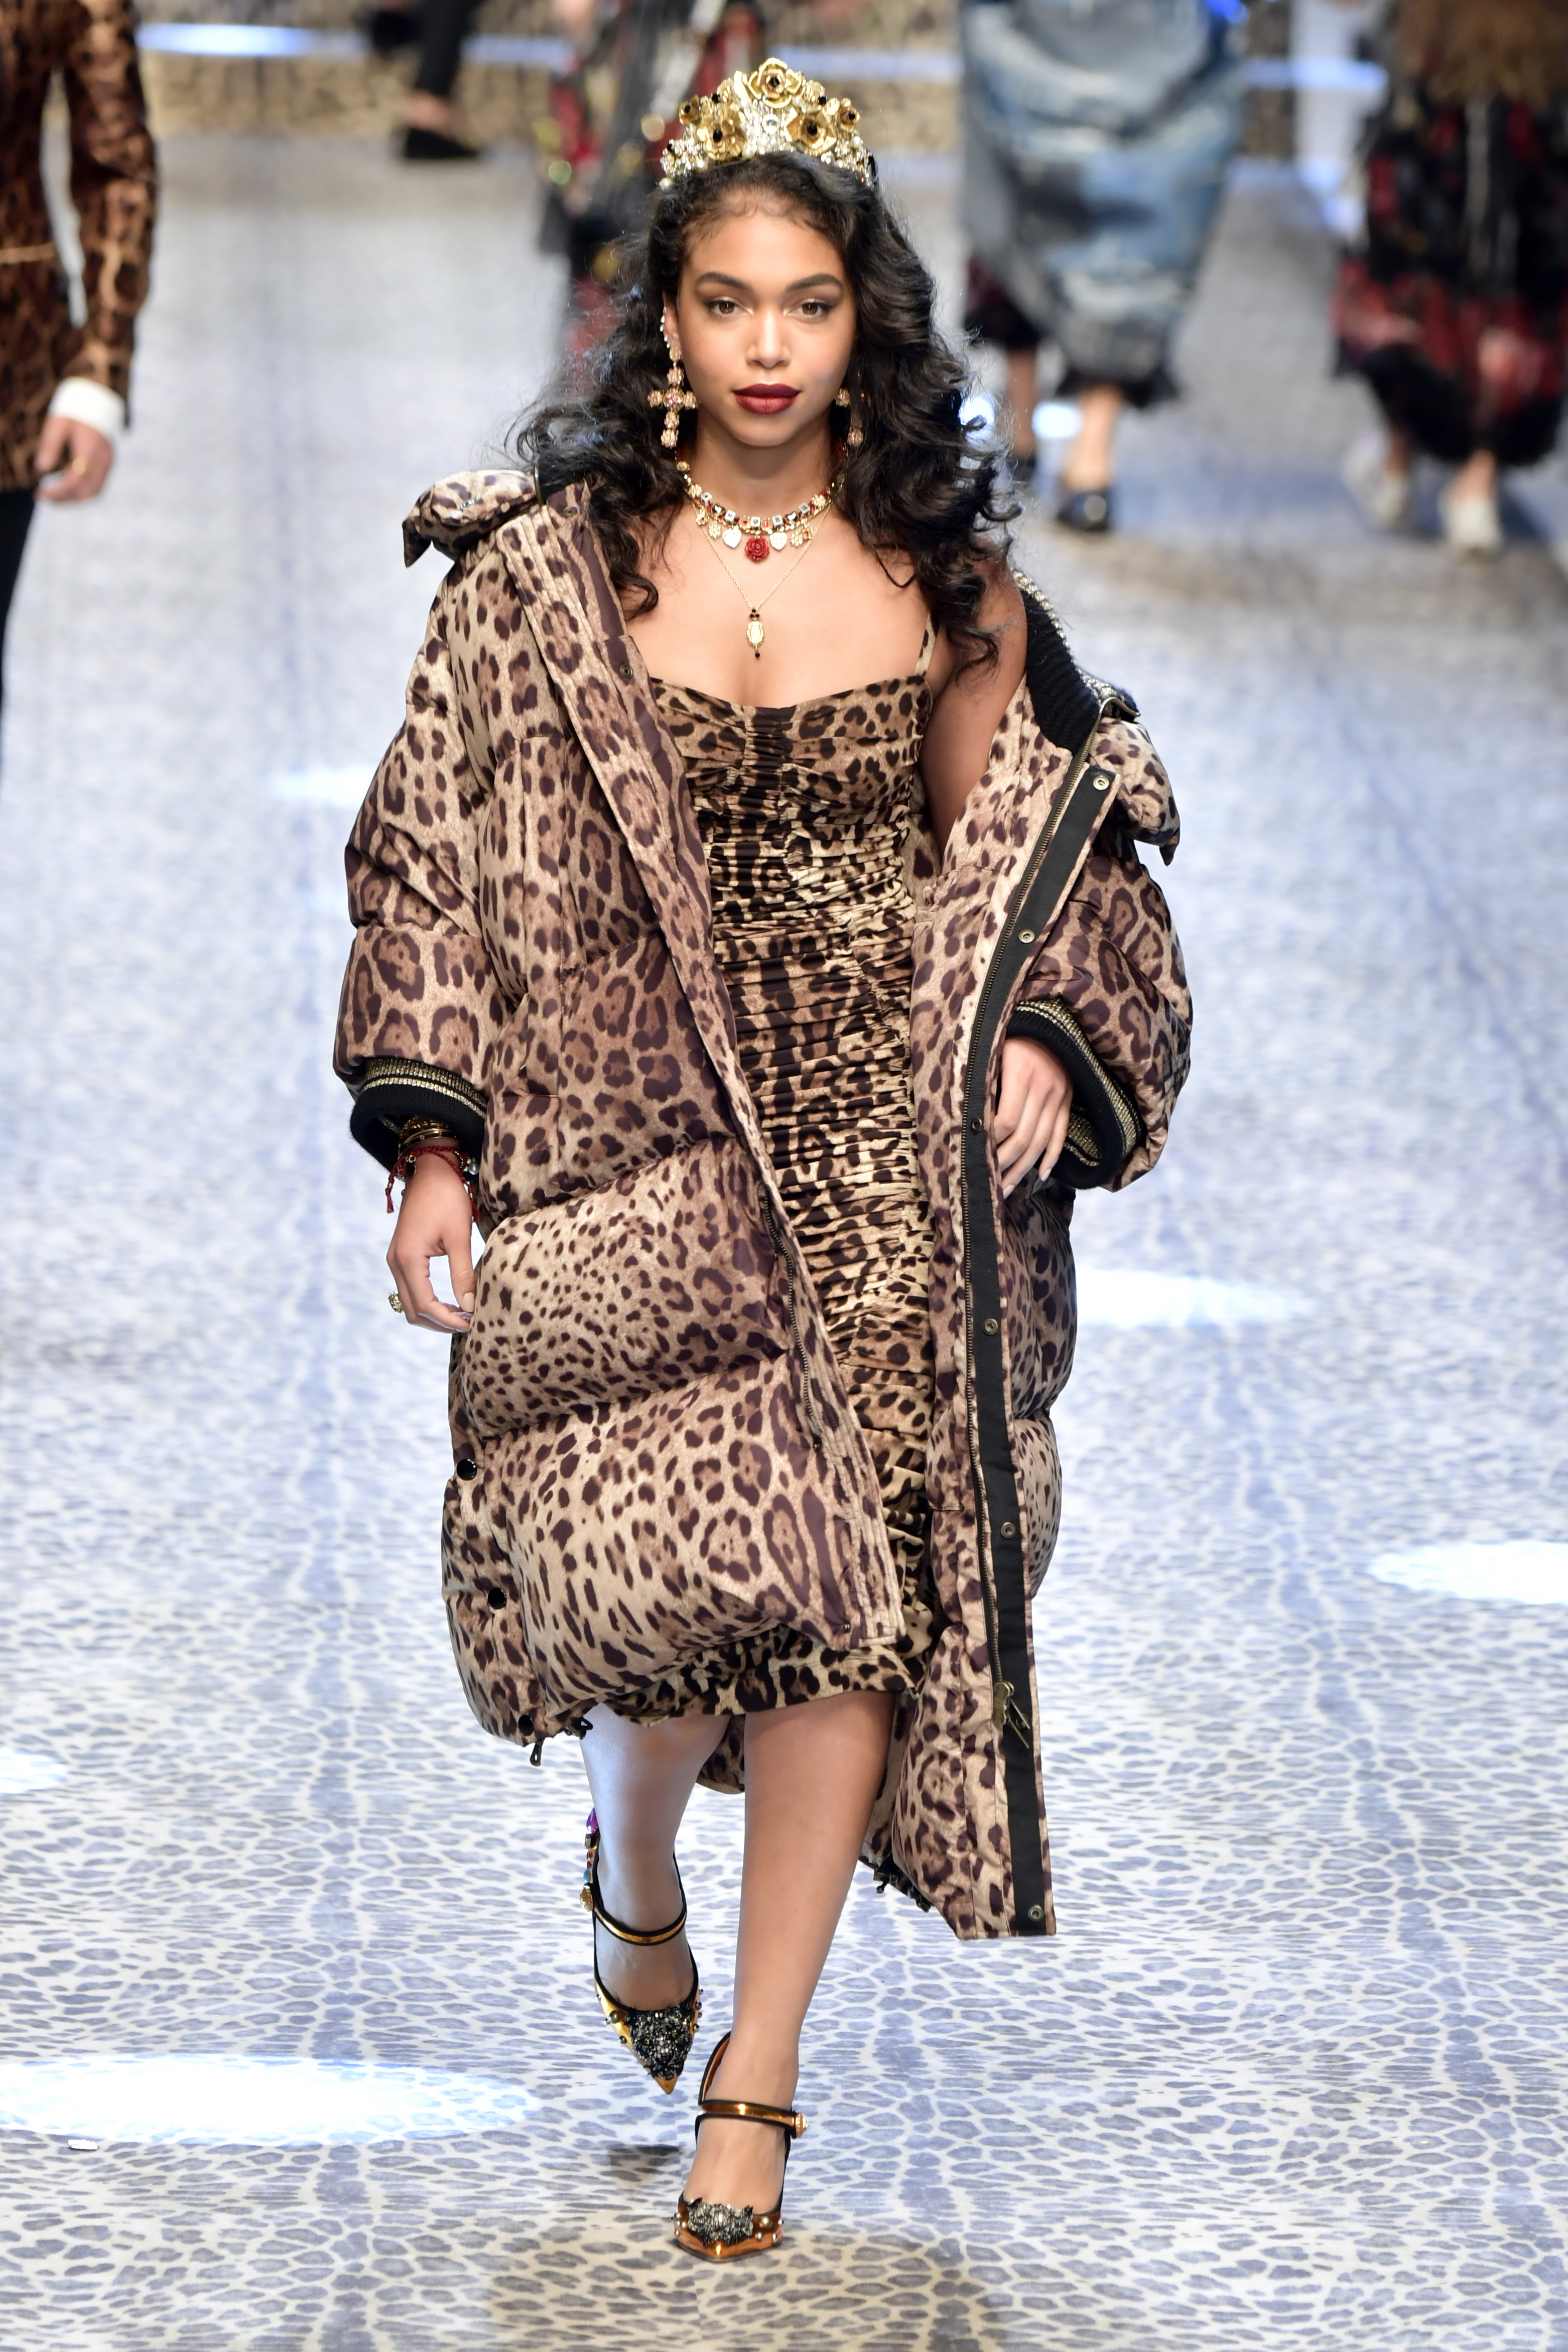 Memphis Depay attending the Elie Saab show during Paris Fashion